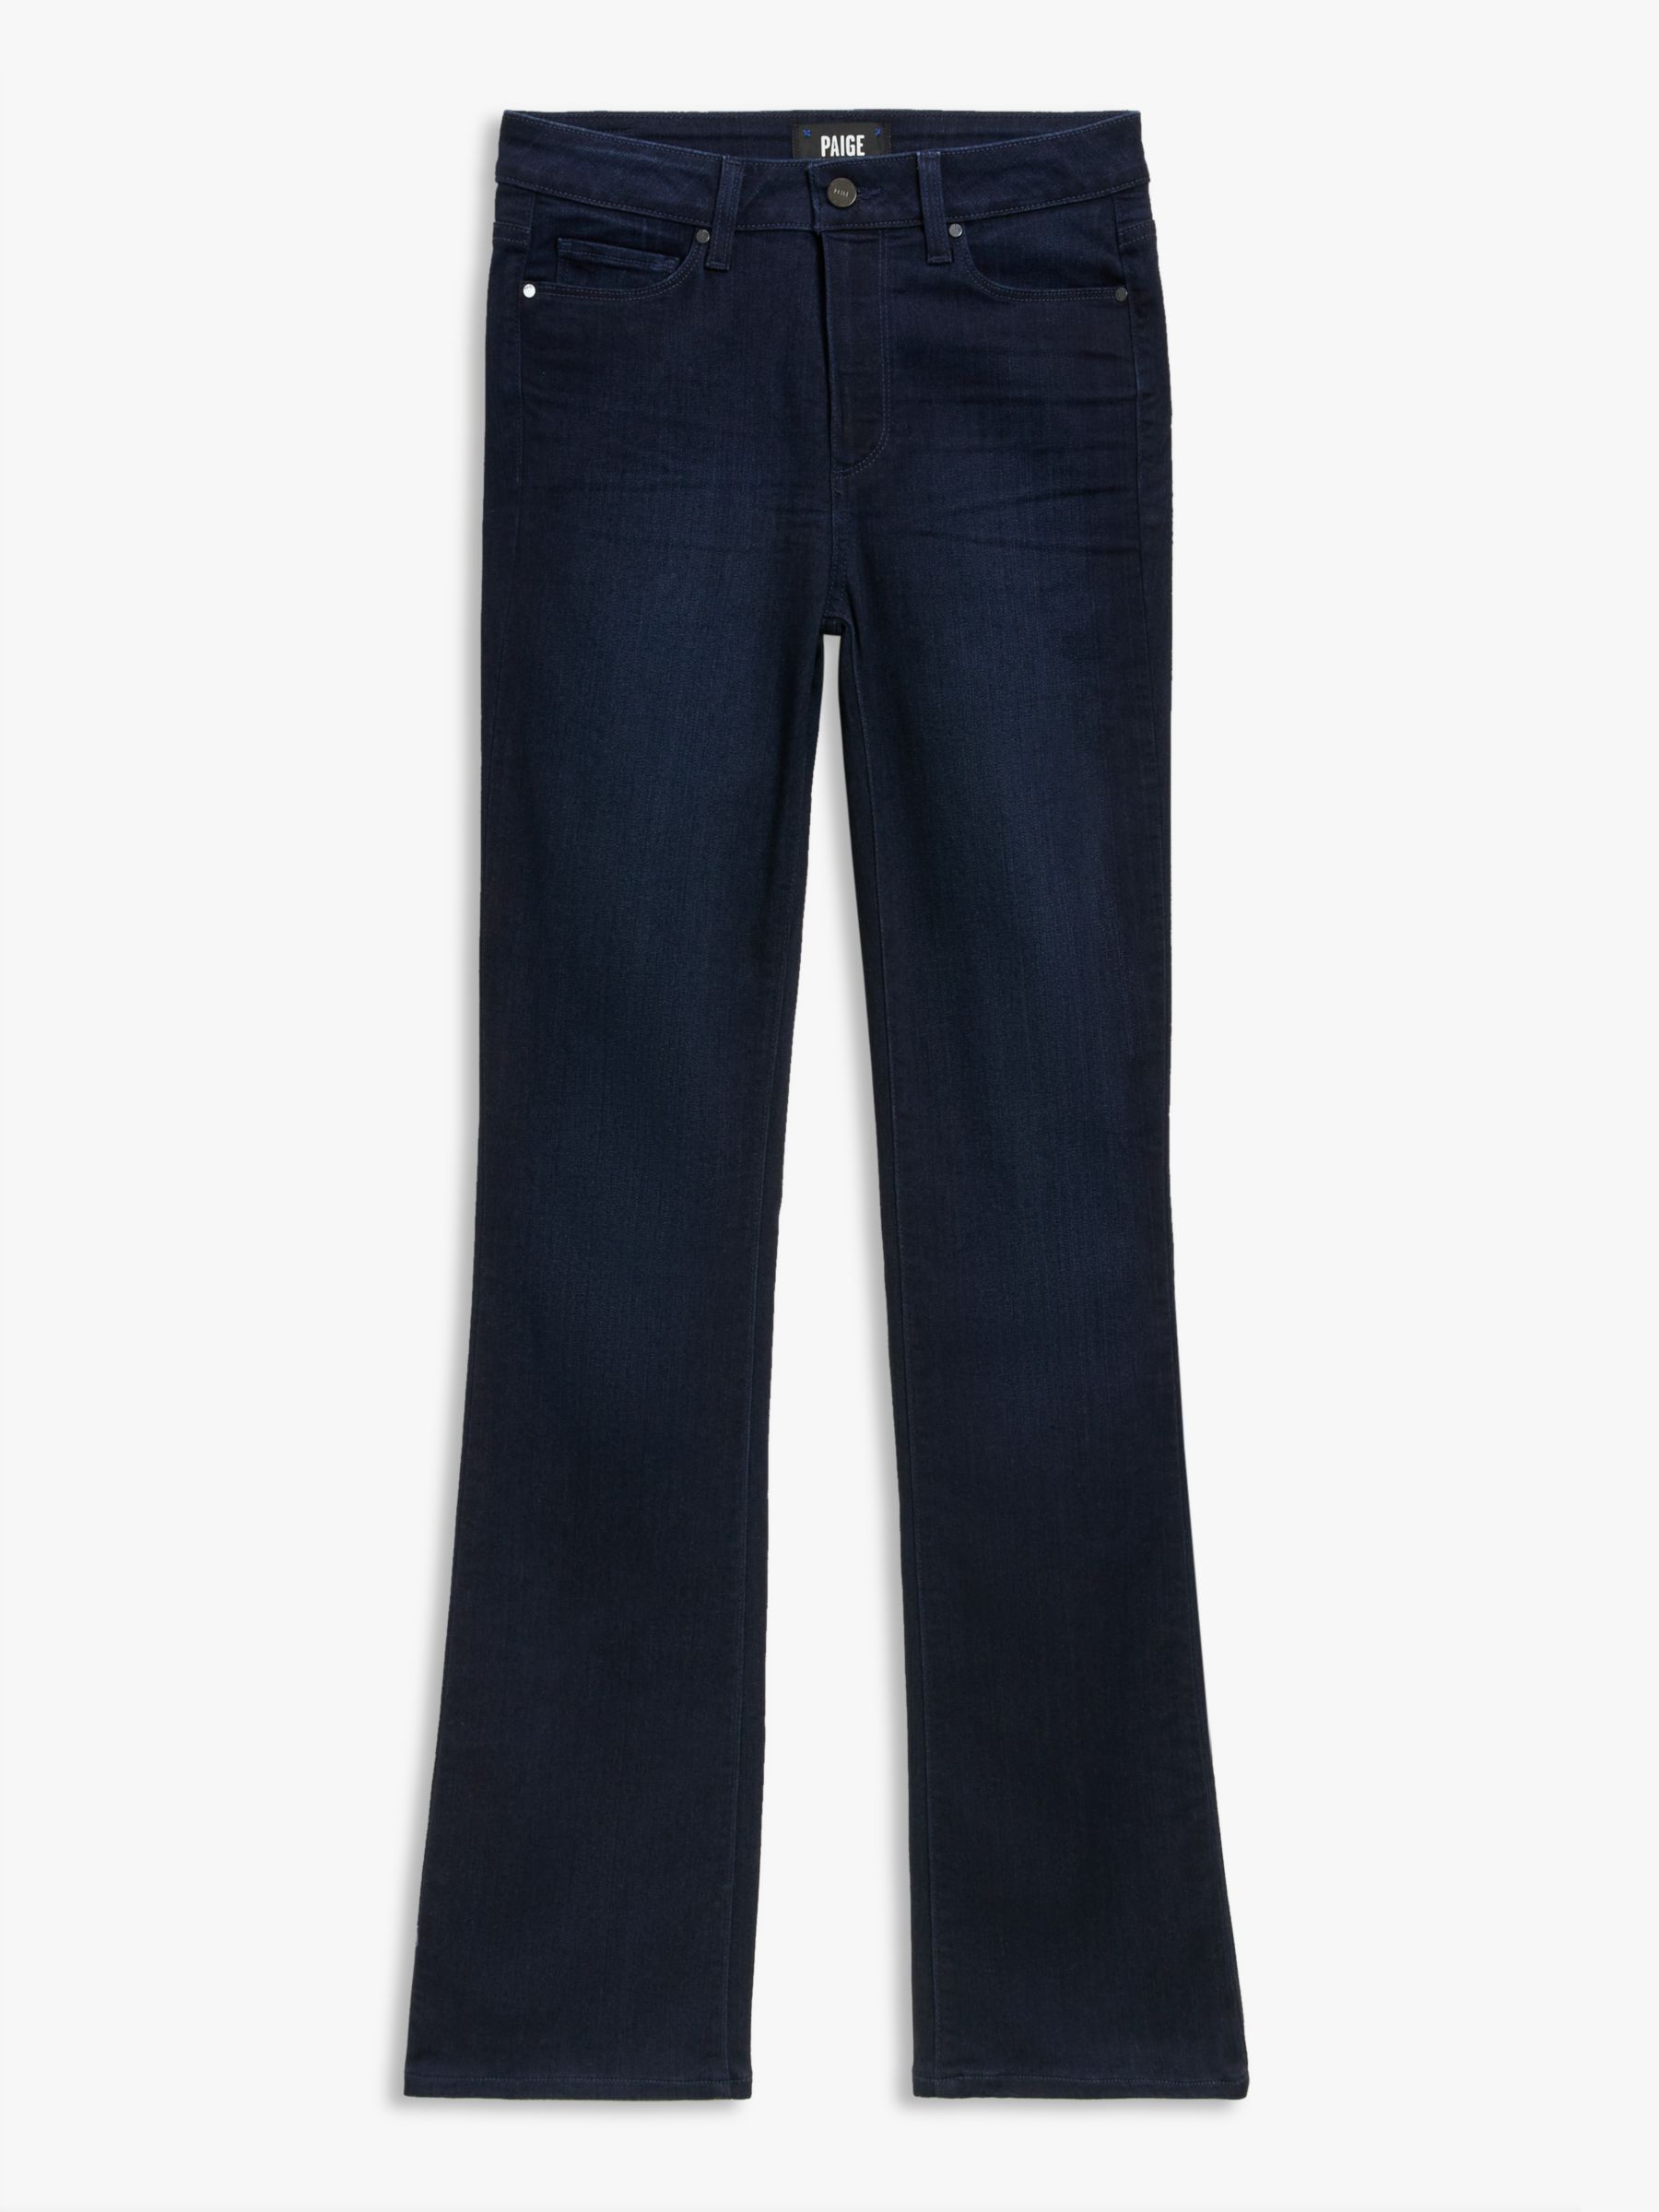 PAIGE High Rise Manhattan Bootcut Jeans, Lana, 30